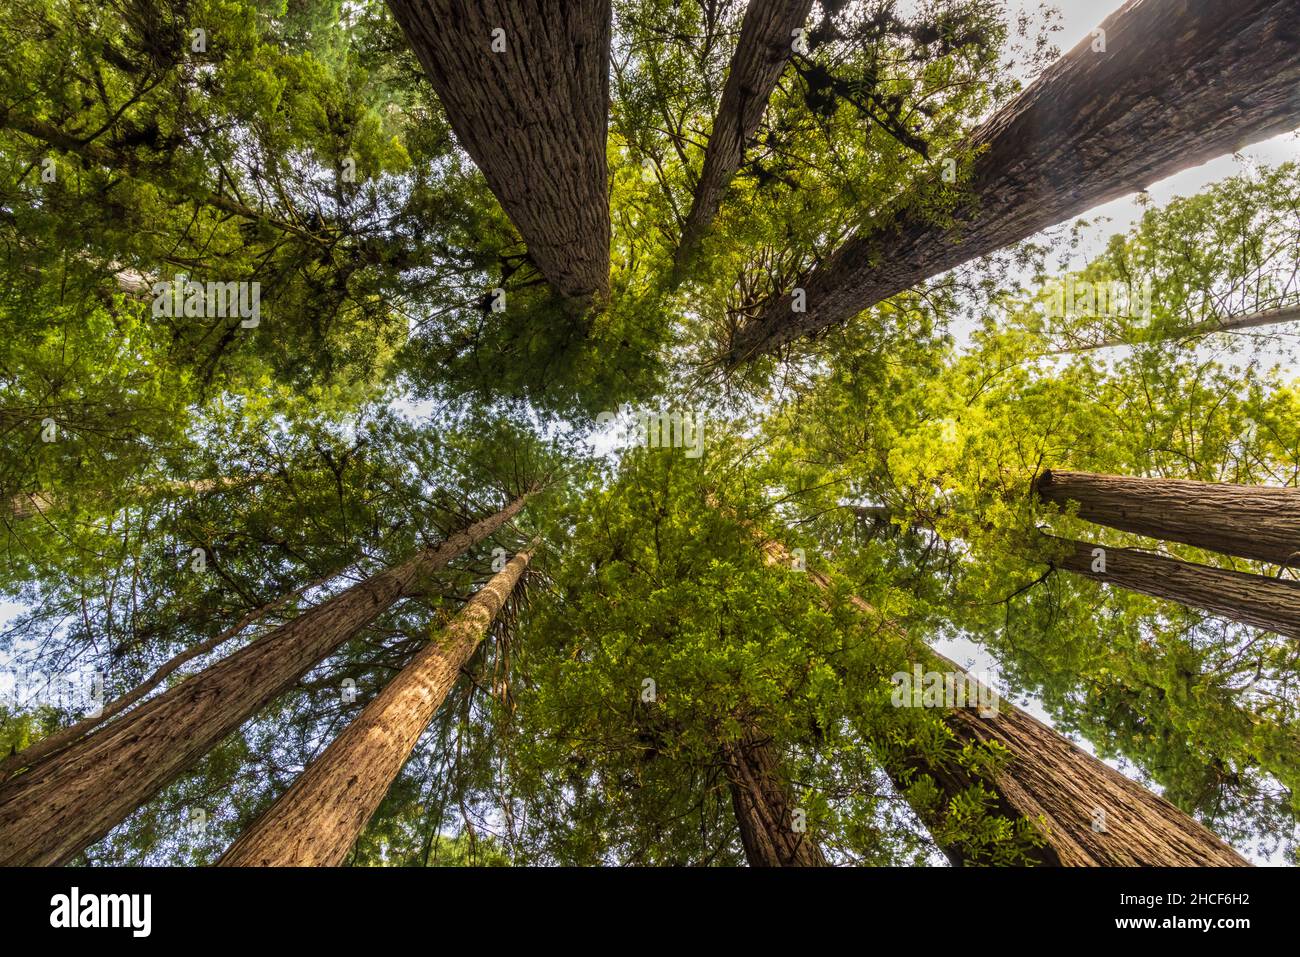 Los árboles de secoya costeros se extienden por el cielo en Simpson Reed Grove en el Parque Estatal Jedediah Smith Redwoods, Crescent City, California. Foto de stock